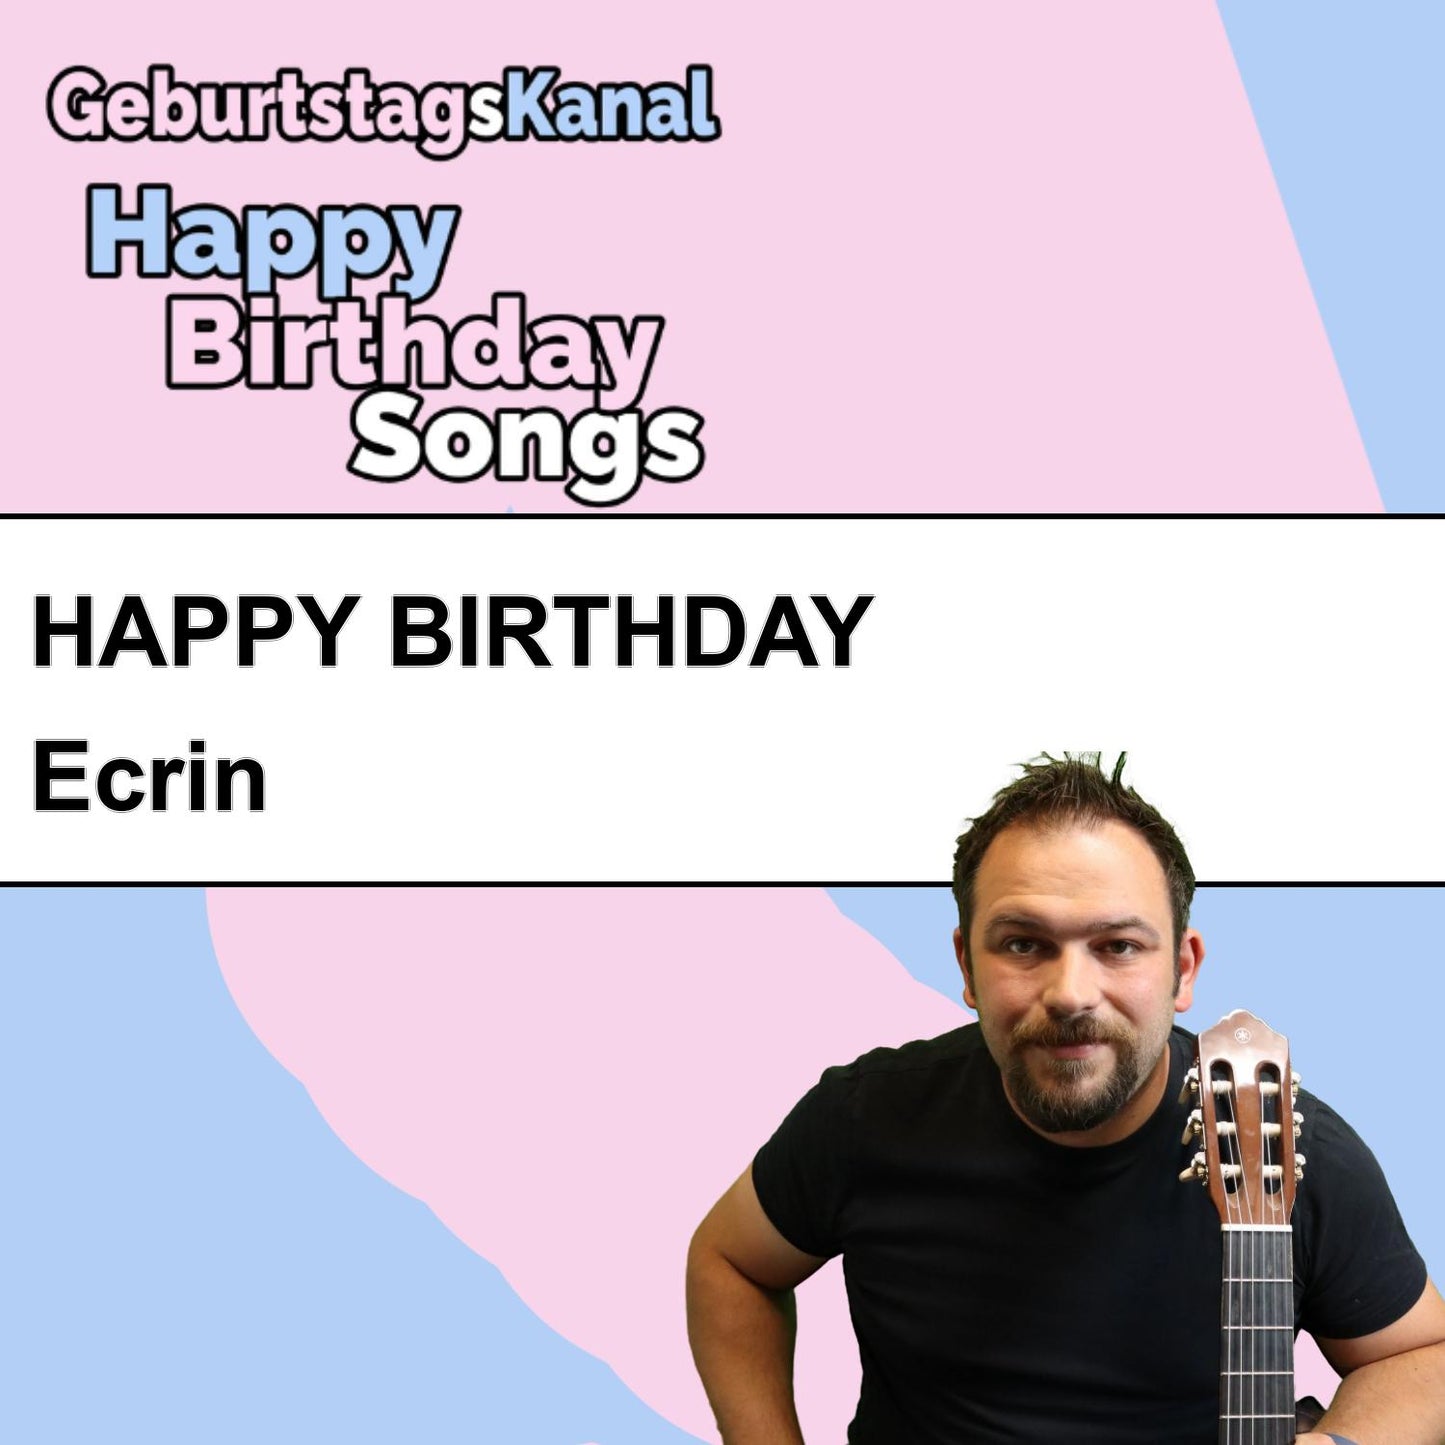 Produktbild Happy Birthday to you Ecrin mit Wunschgrußbotschaft